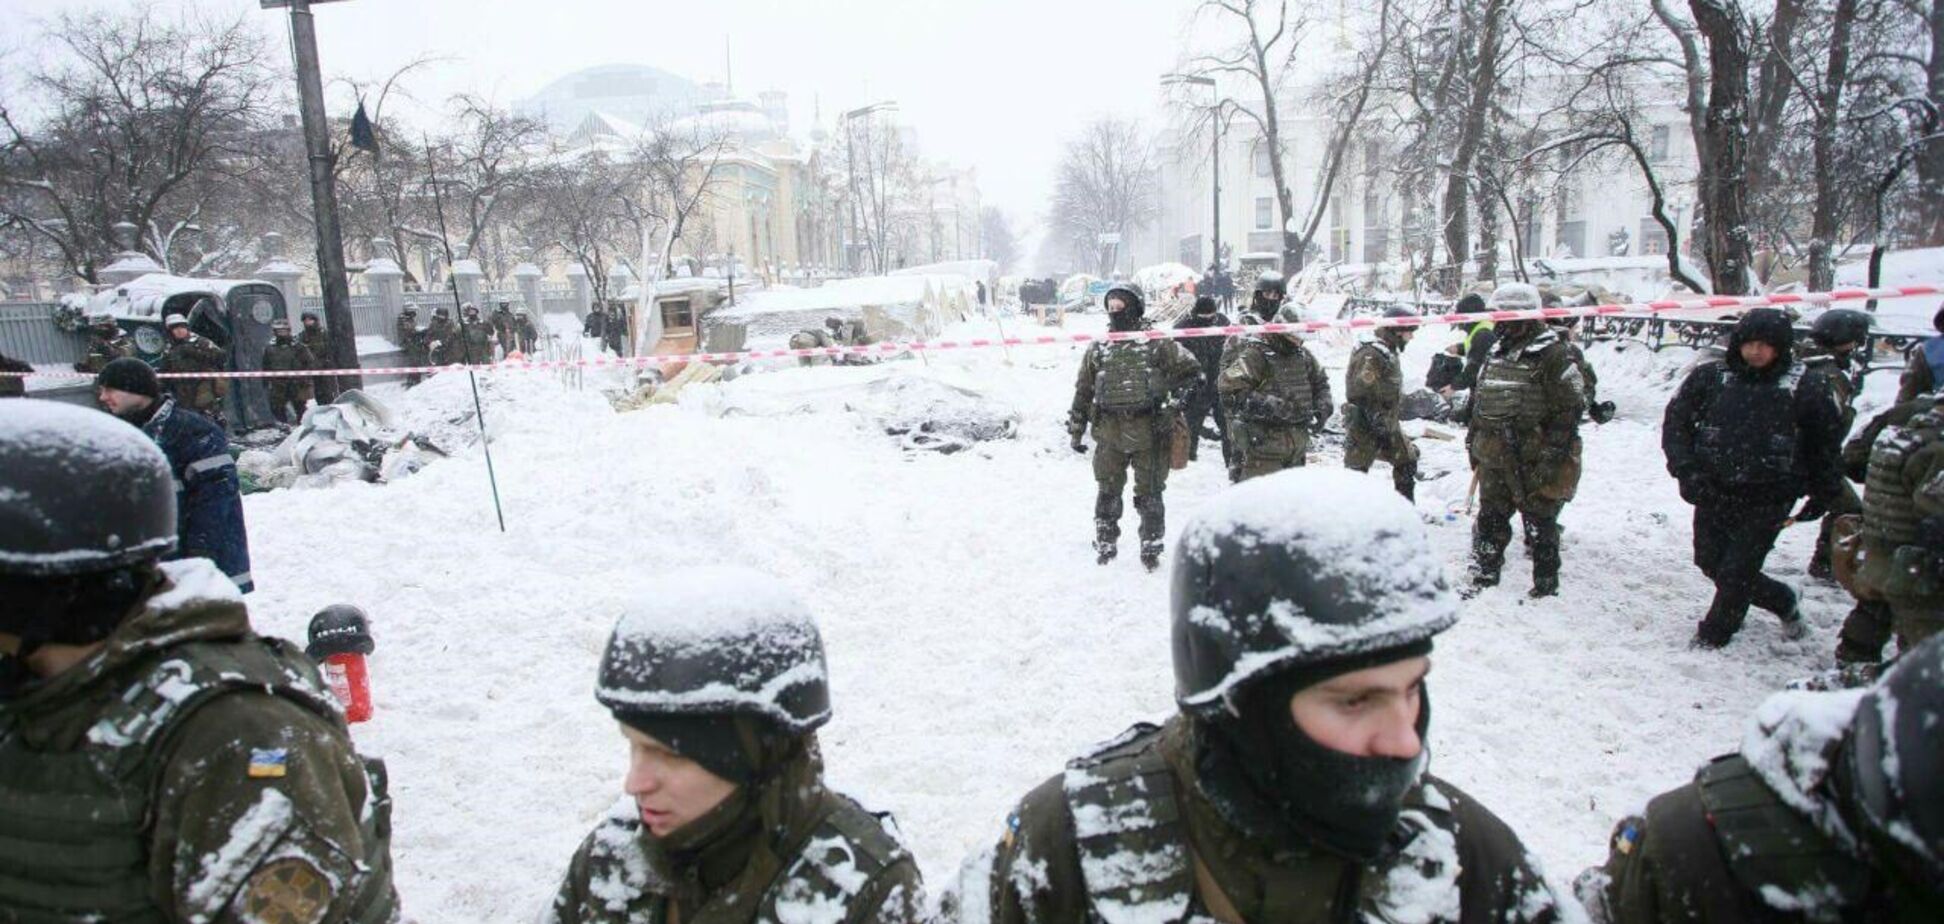 'Ні' проплаченому з-за кордону екстремізму в Києві